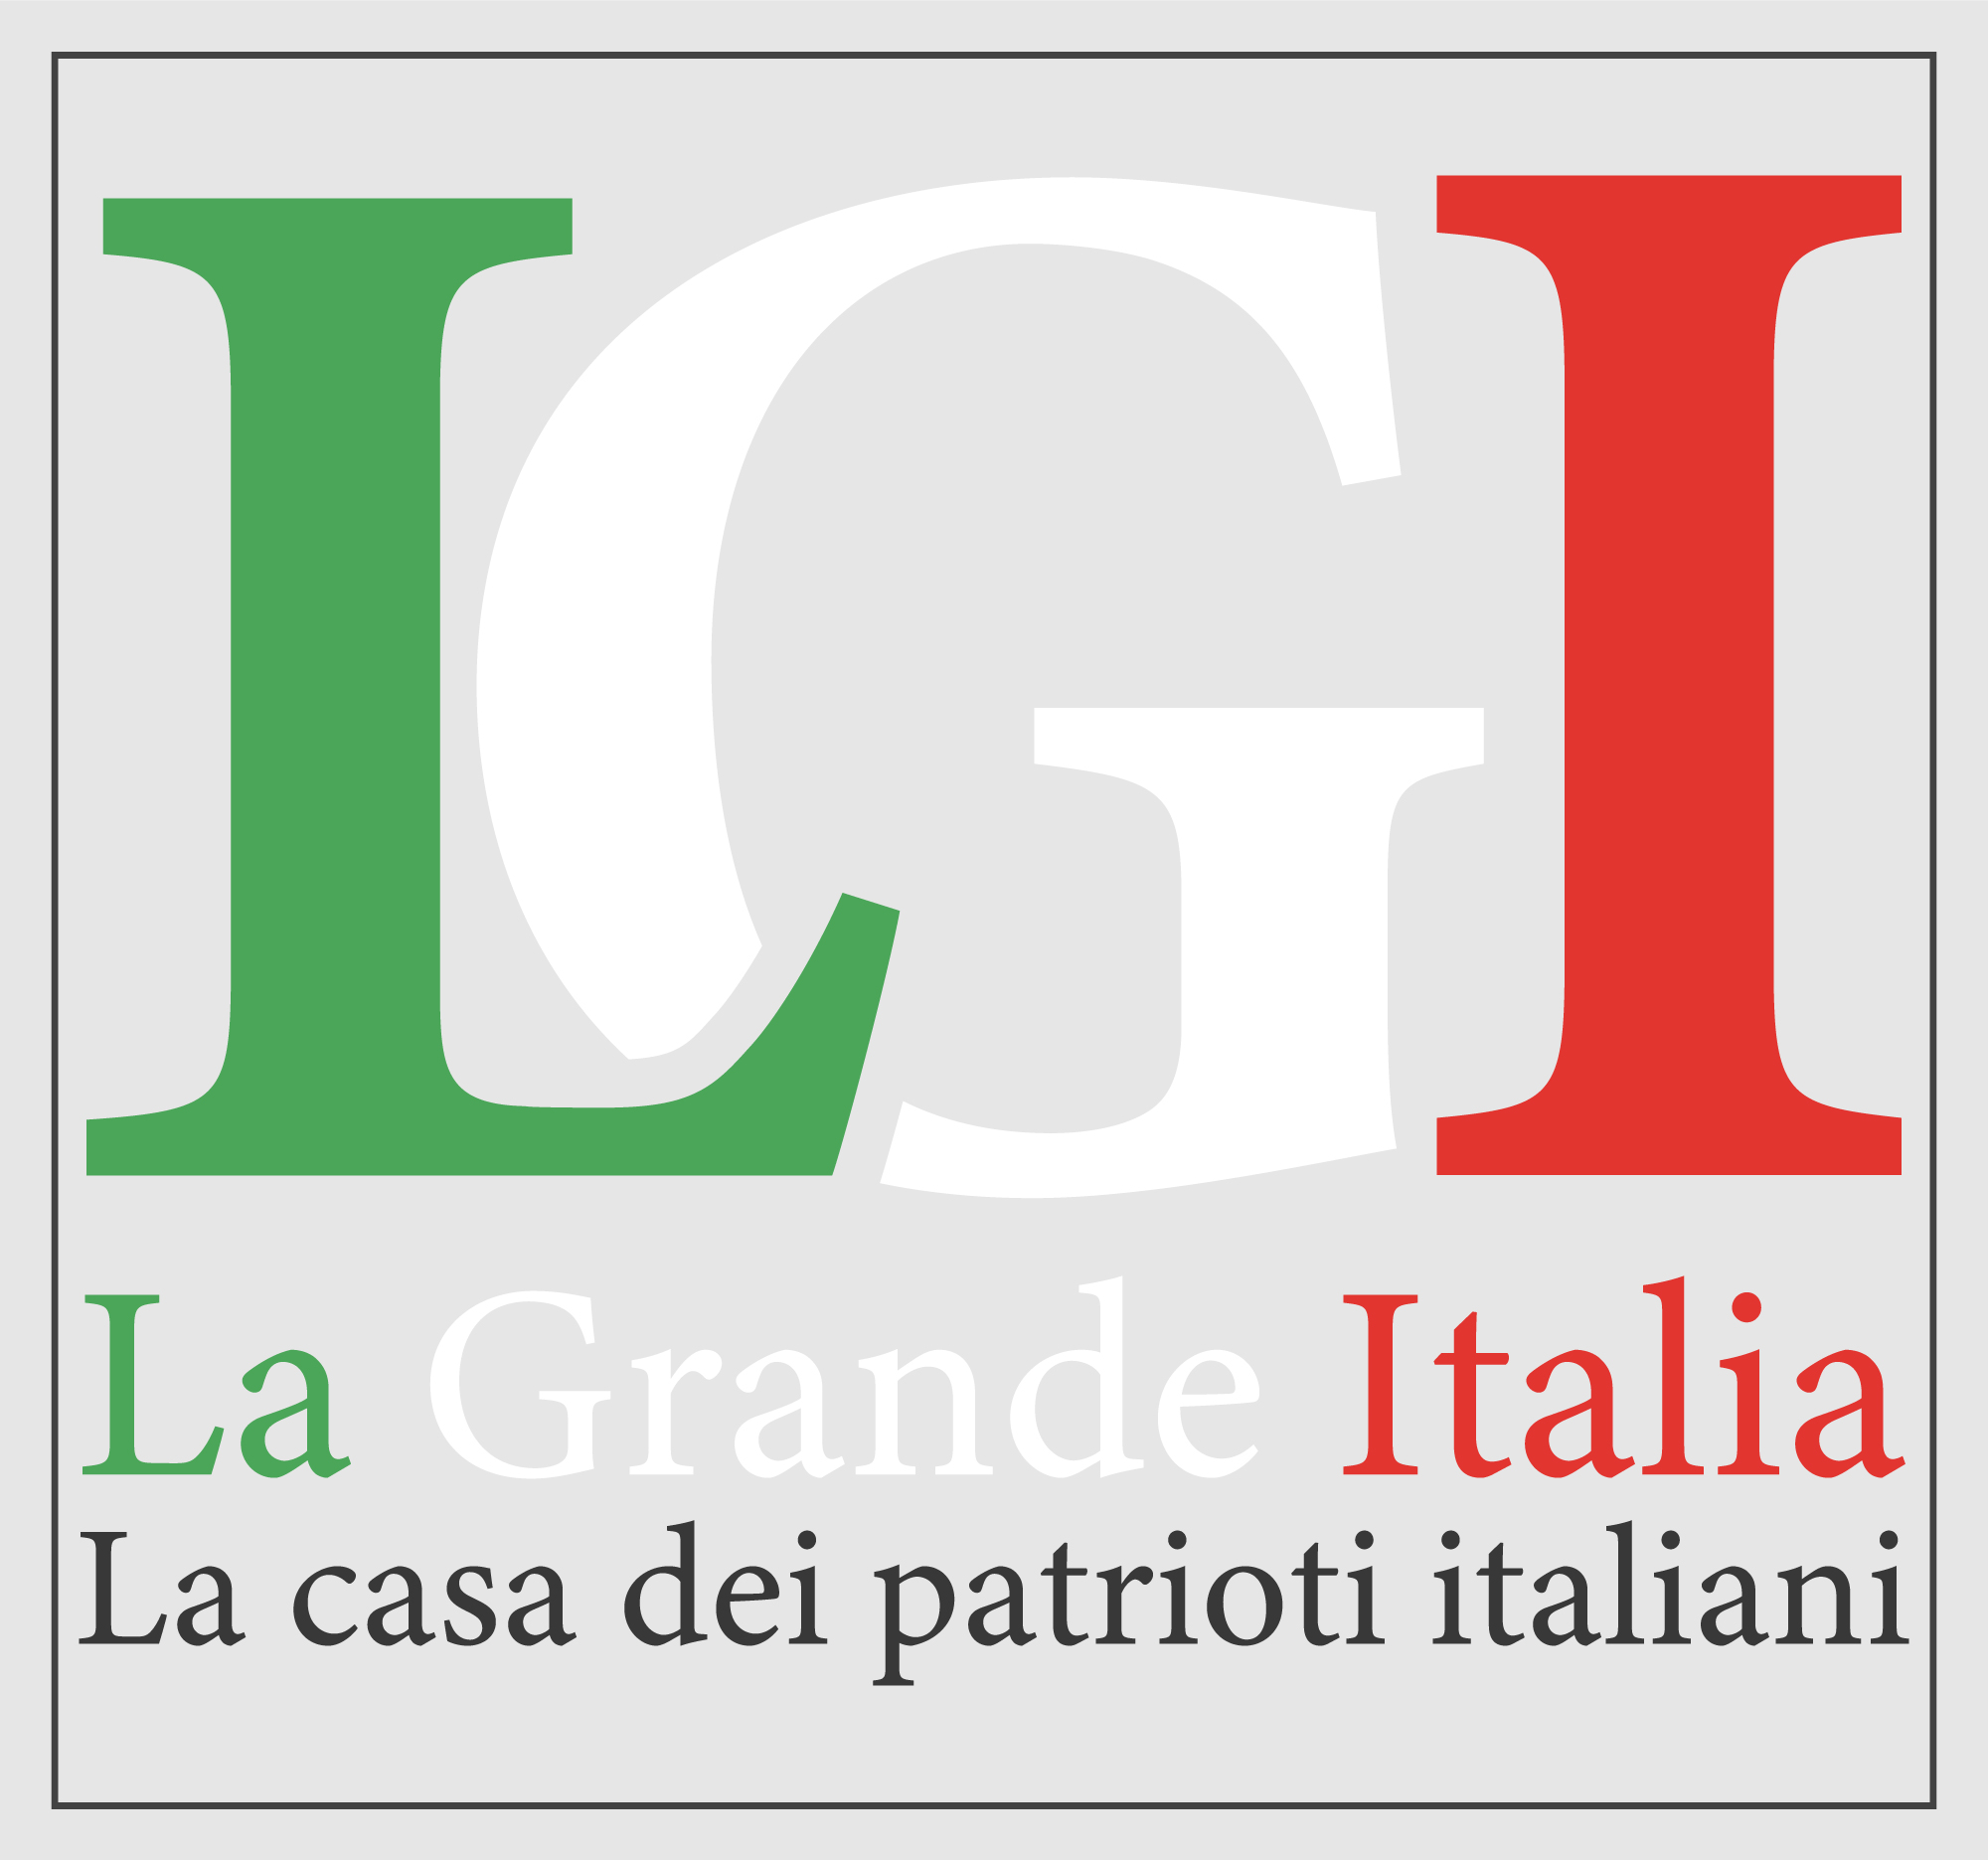 La Grande Italia: saluto ai patrioti